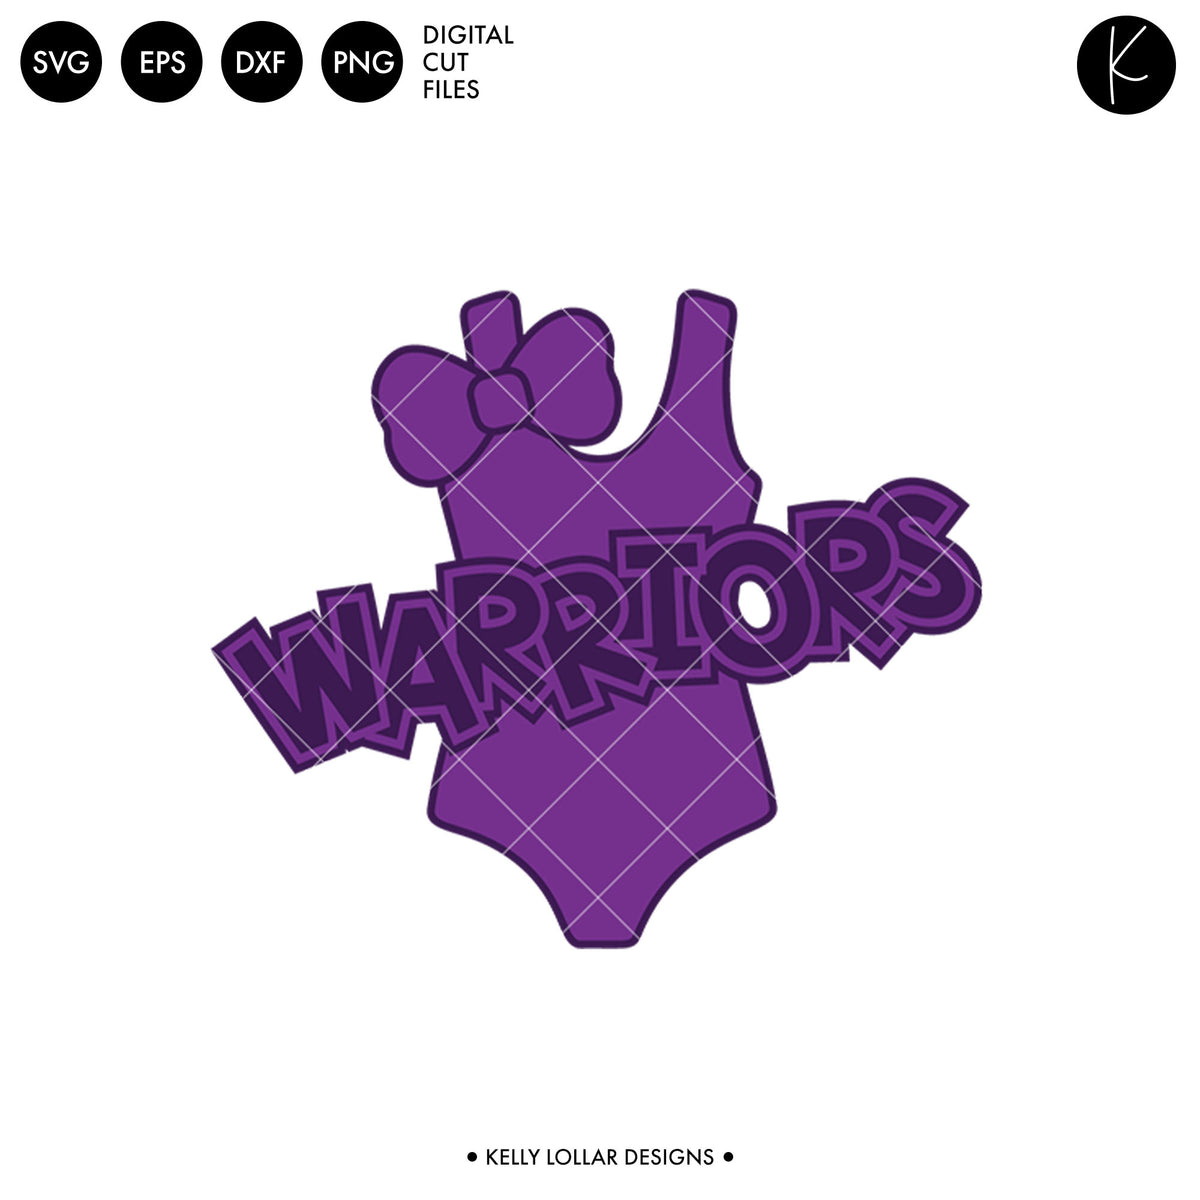 Warriors Swim Bundle | SVG DXF EPS PNG Cut Files